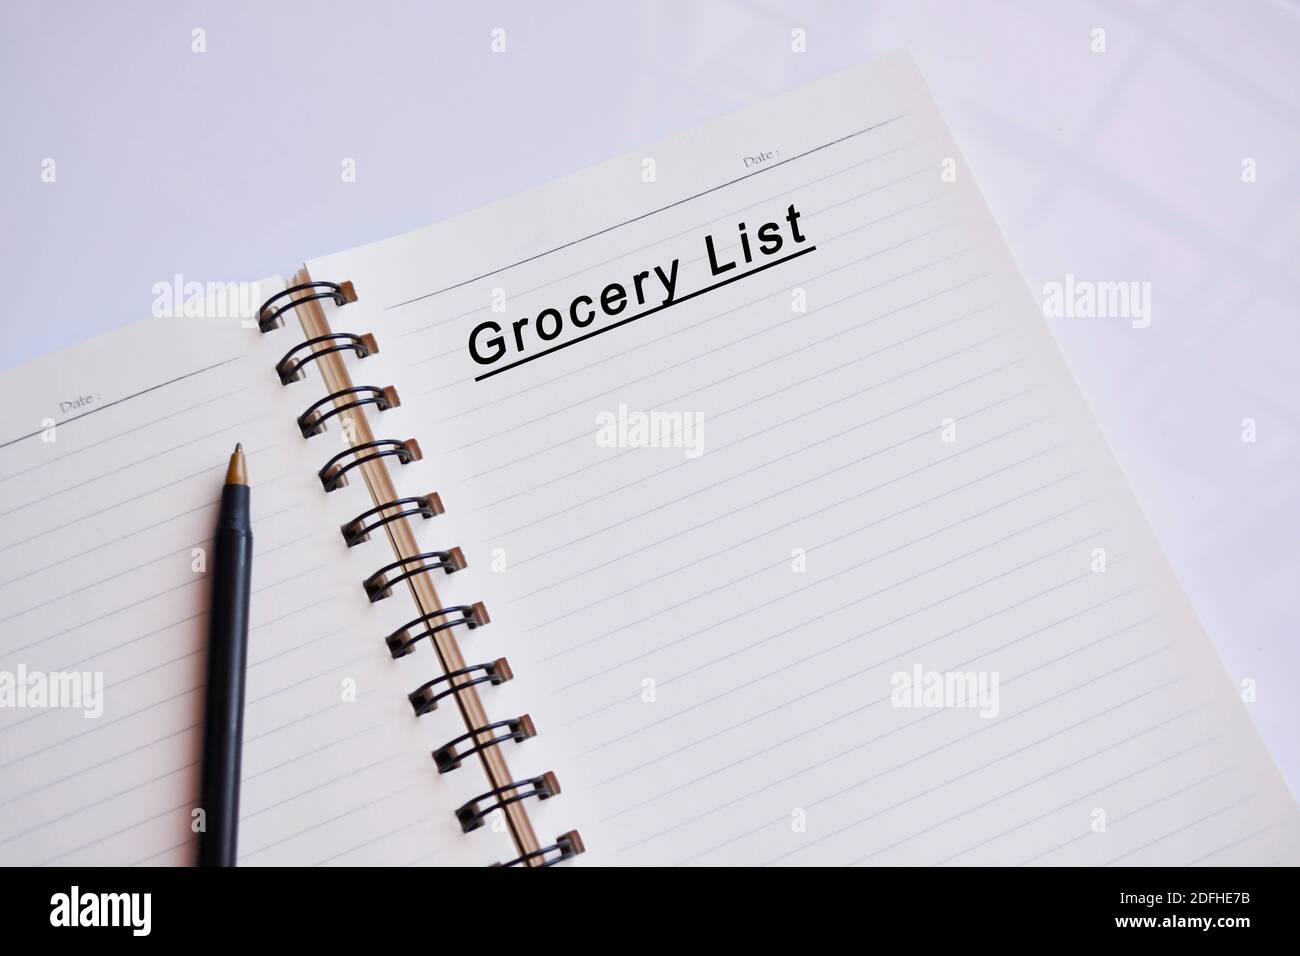 Lebensmittelgeschäft Liste Text auf einem Notizblock mit Spiegelung von Fenster Glas. Haushaltsbudget-Konzept Stockfoto